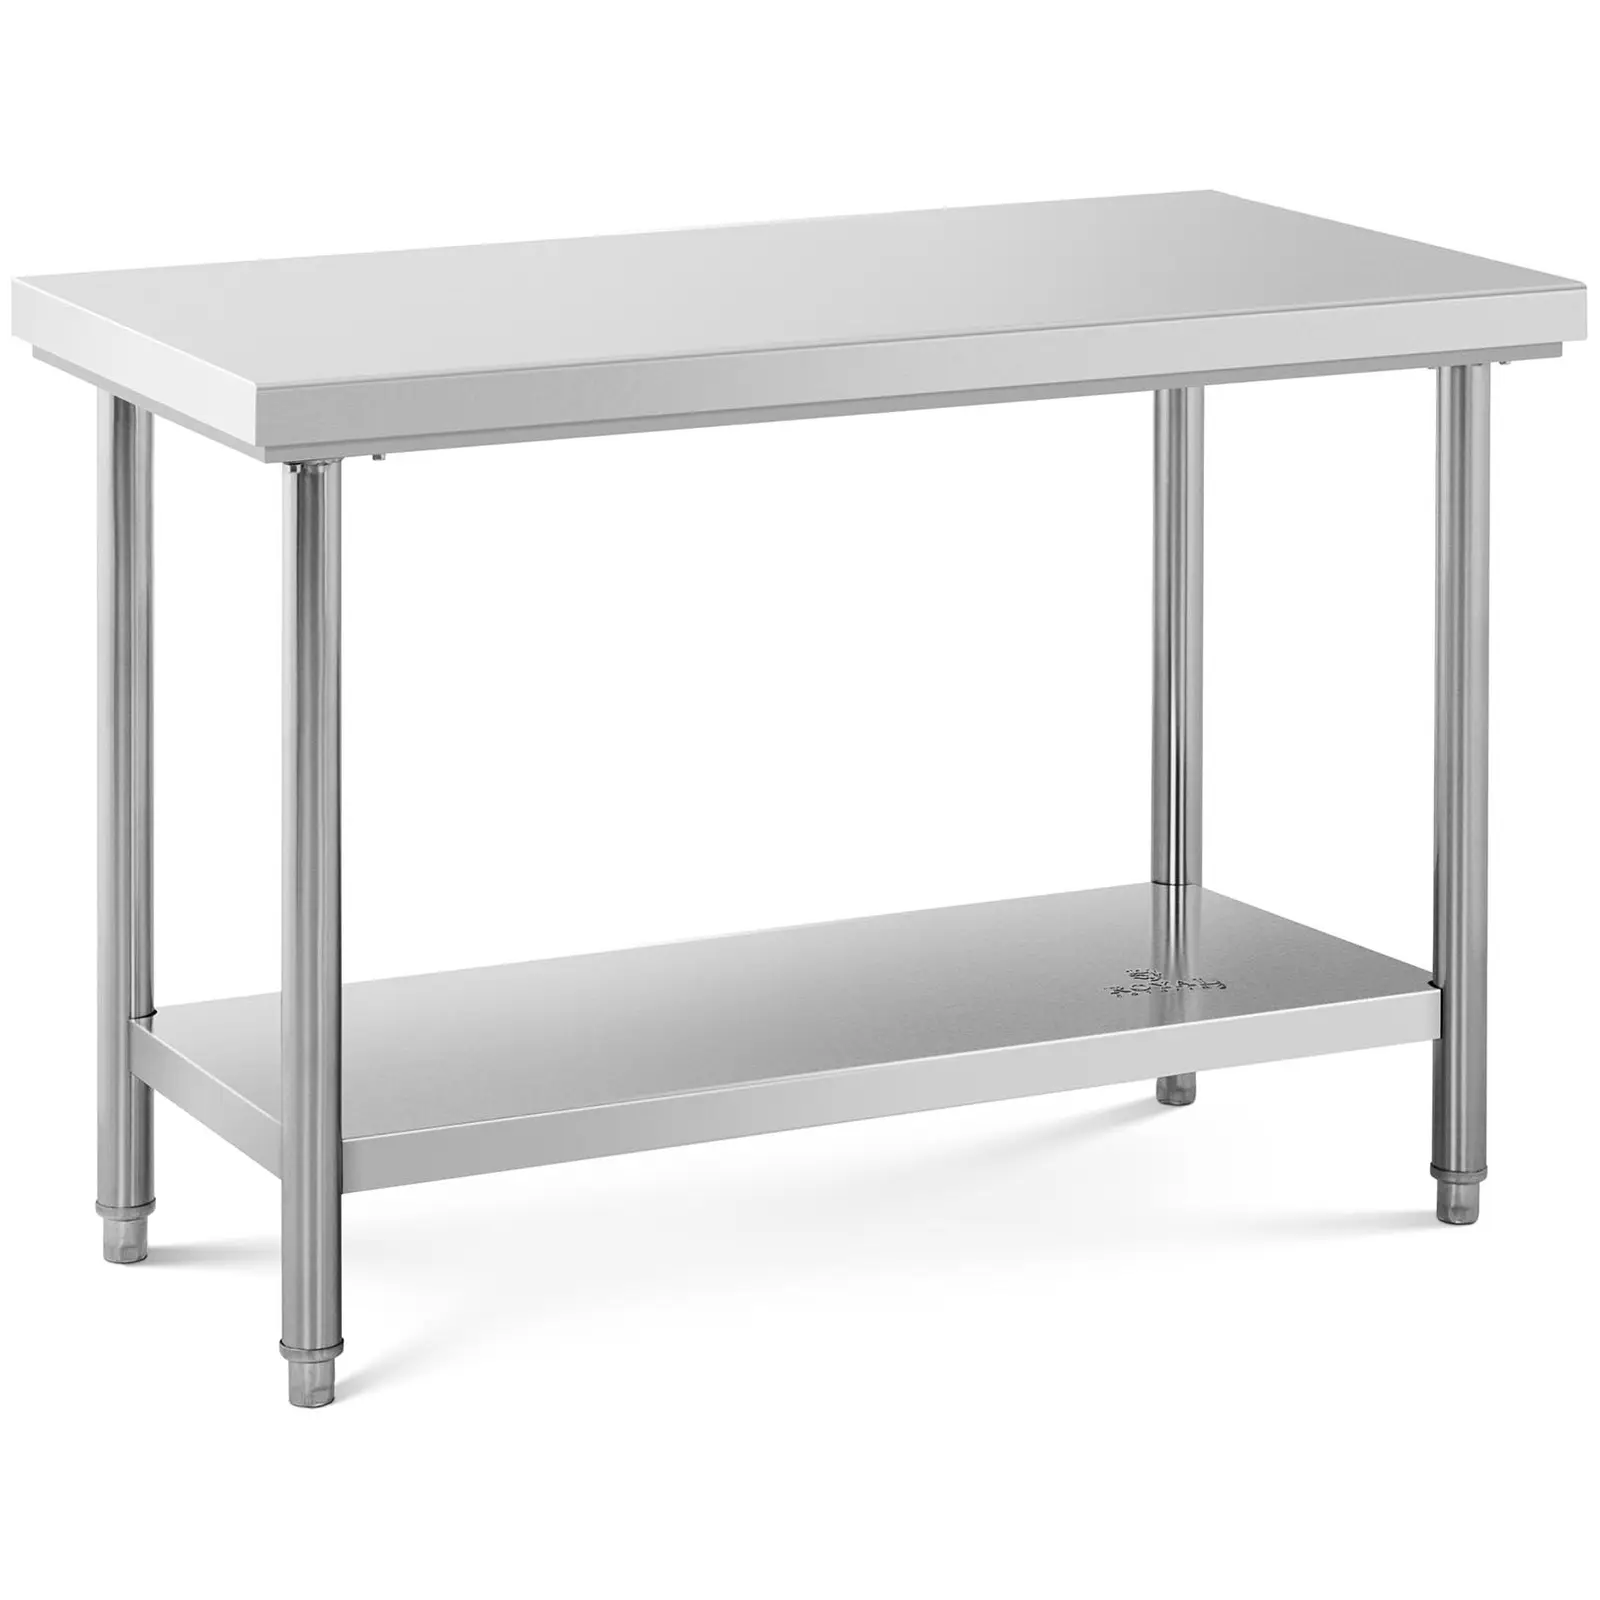 Delovna miza iz nerjavečega jekla - 120 x 60 cm - nosilnost 137 kg